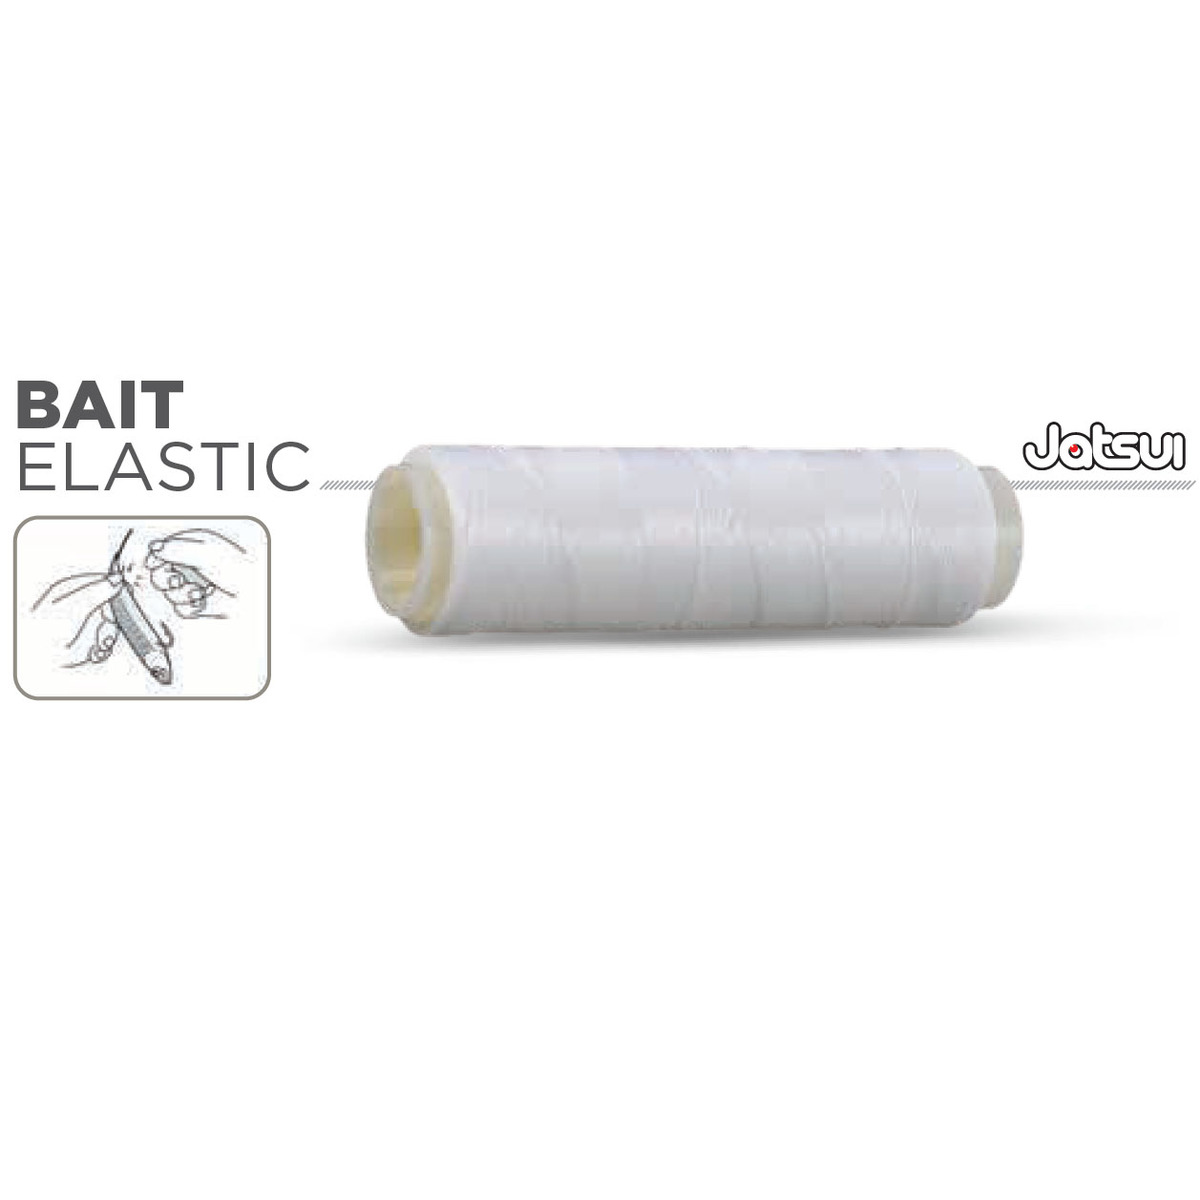 Jatsui Bait Elastic - 0.25 mm - 100 m